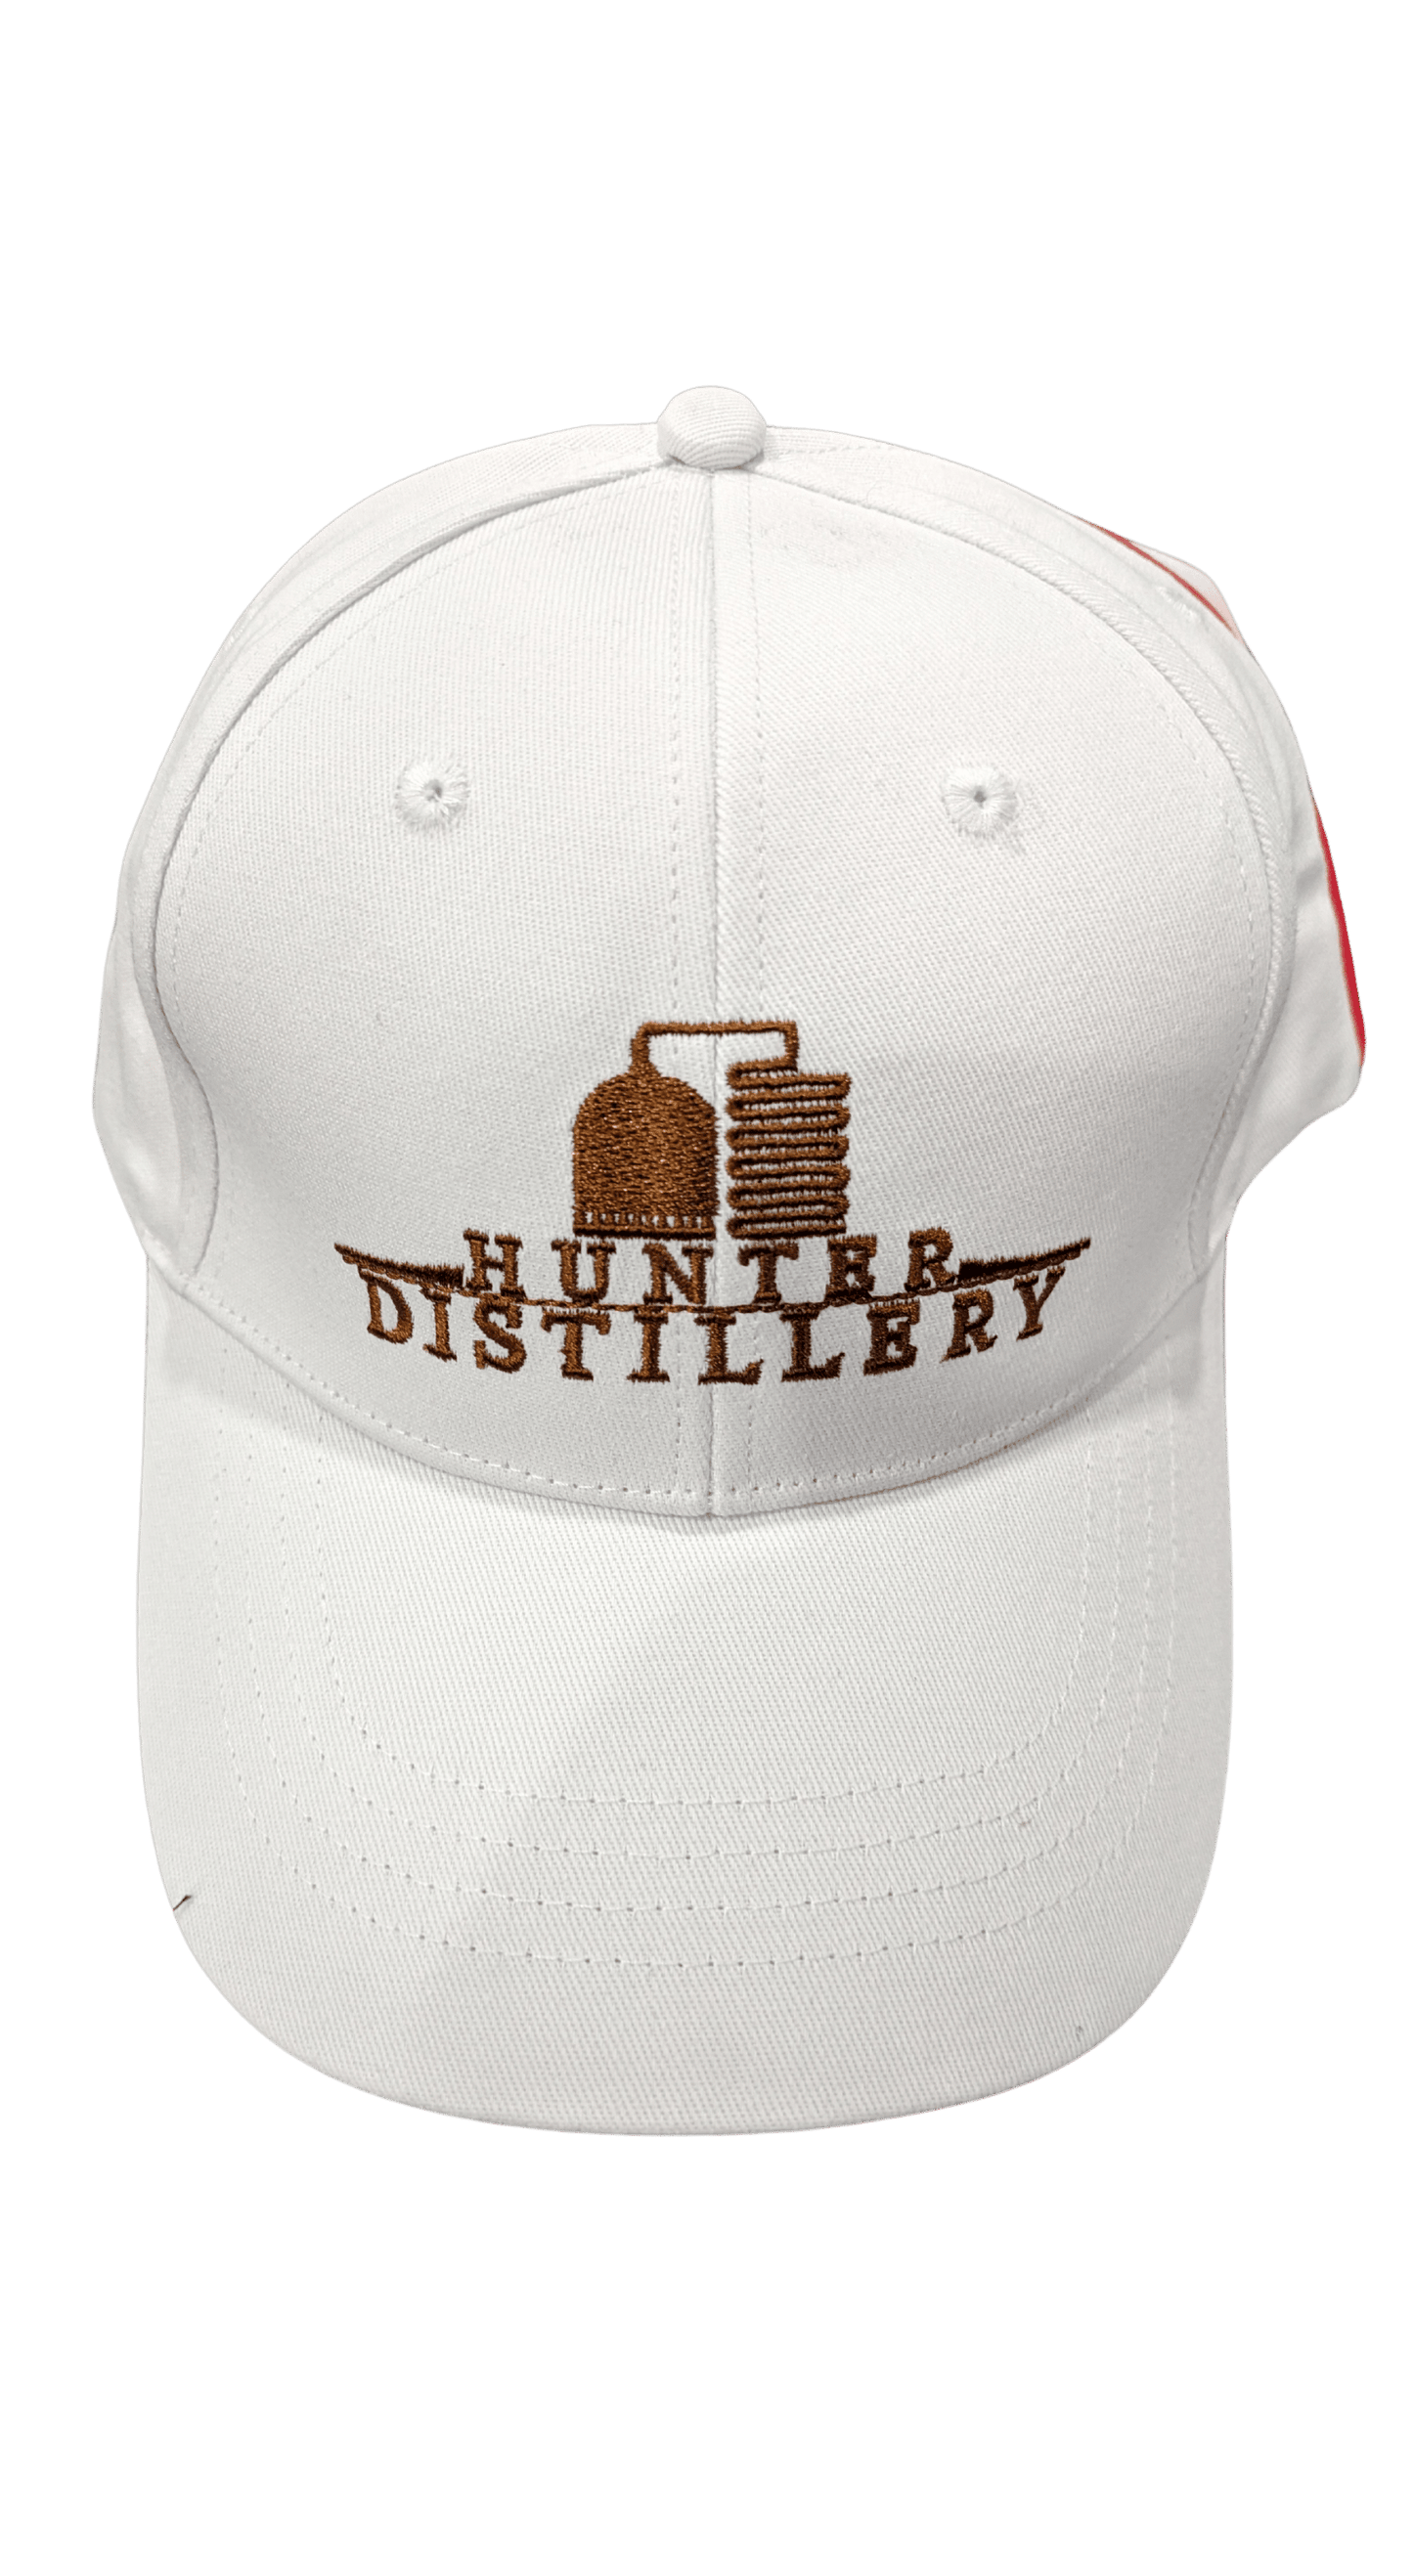 Hunter Distillery Caps